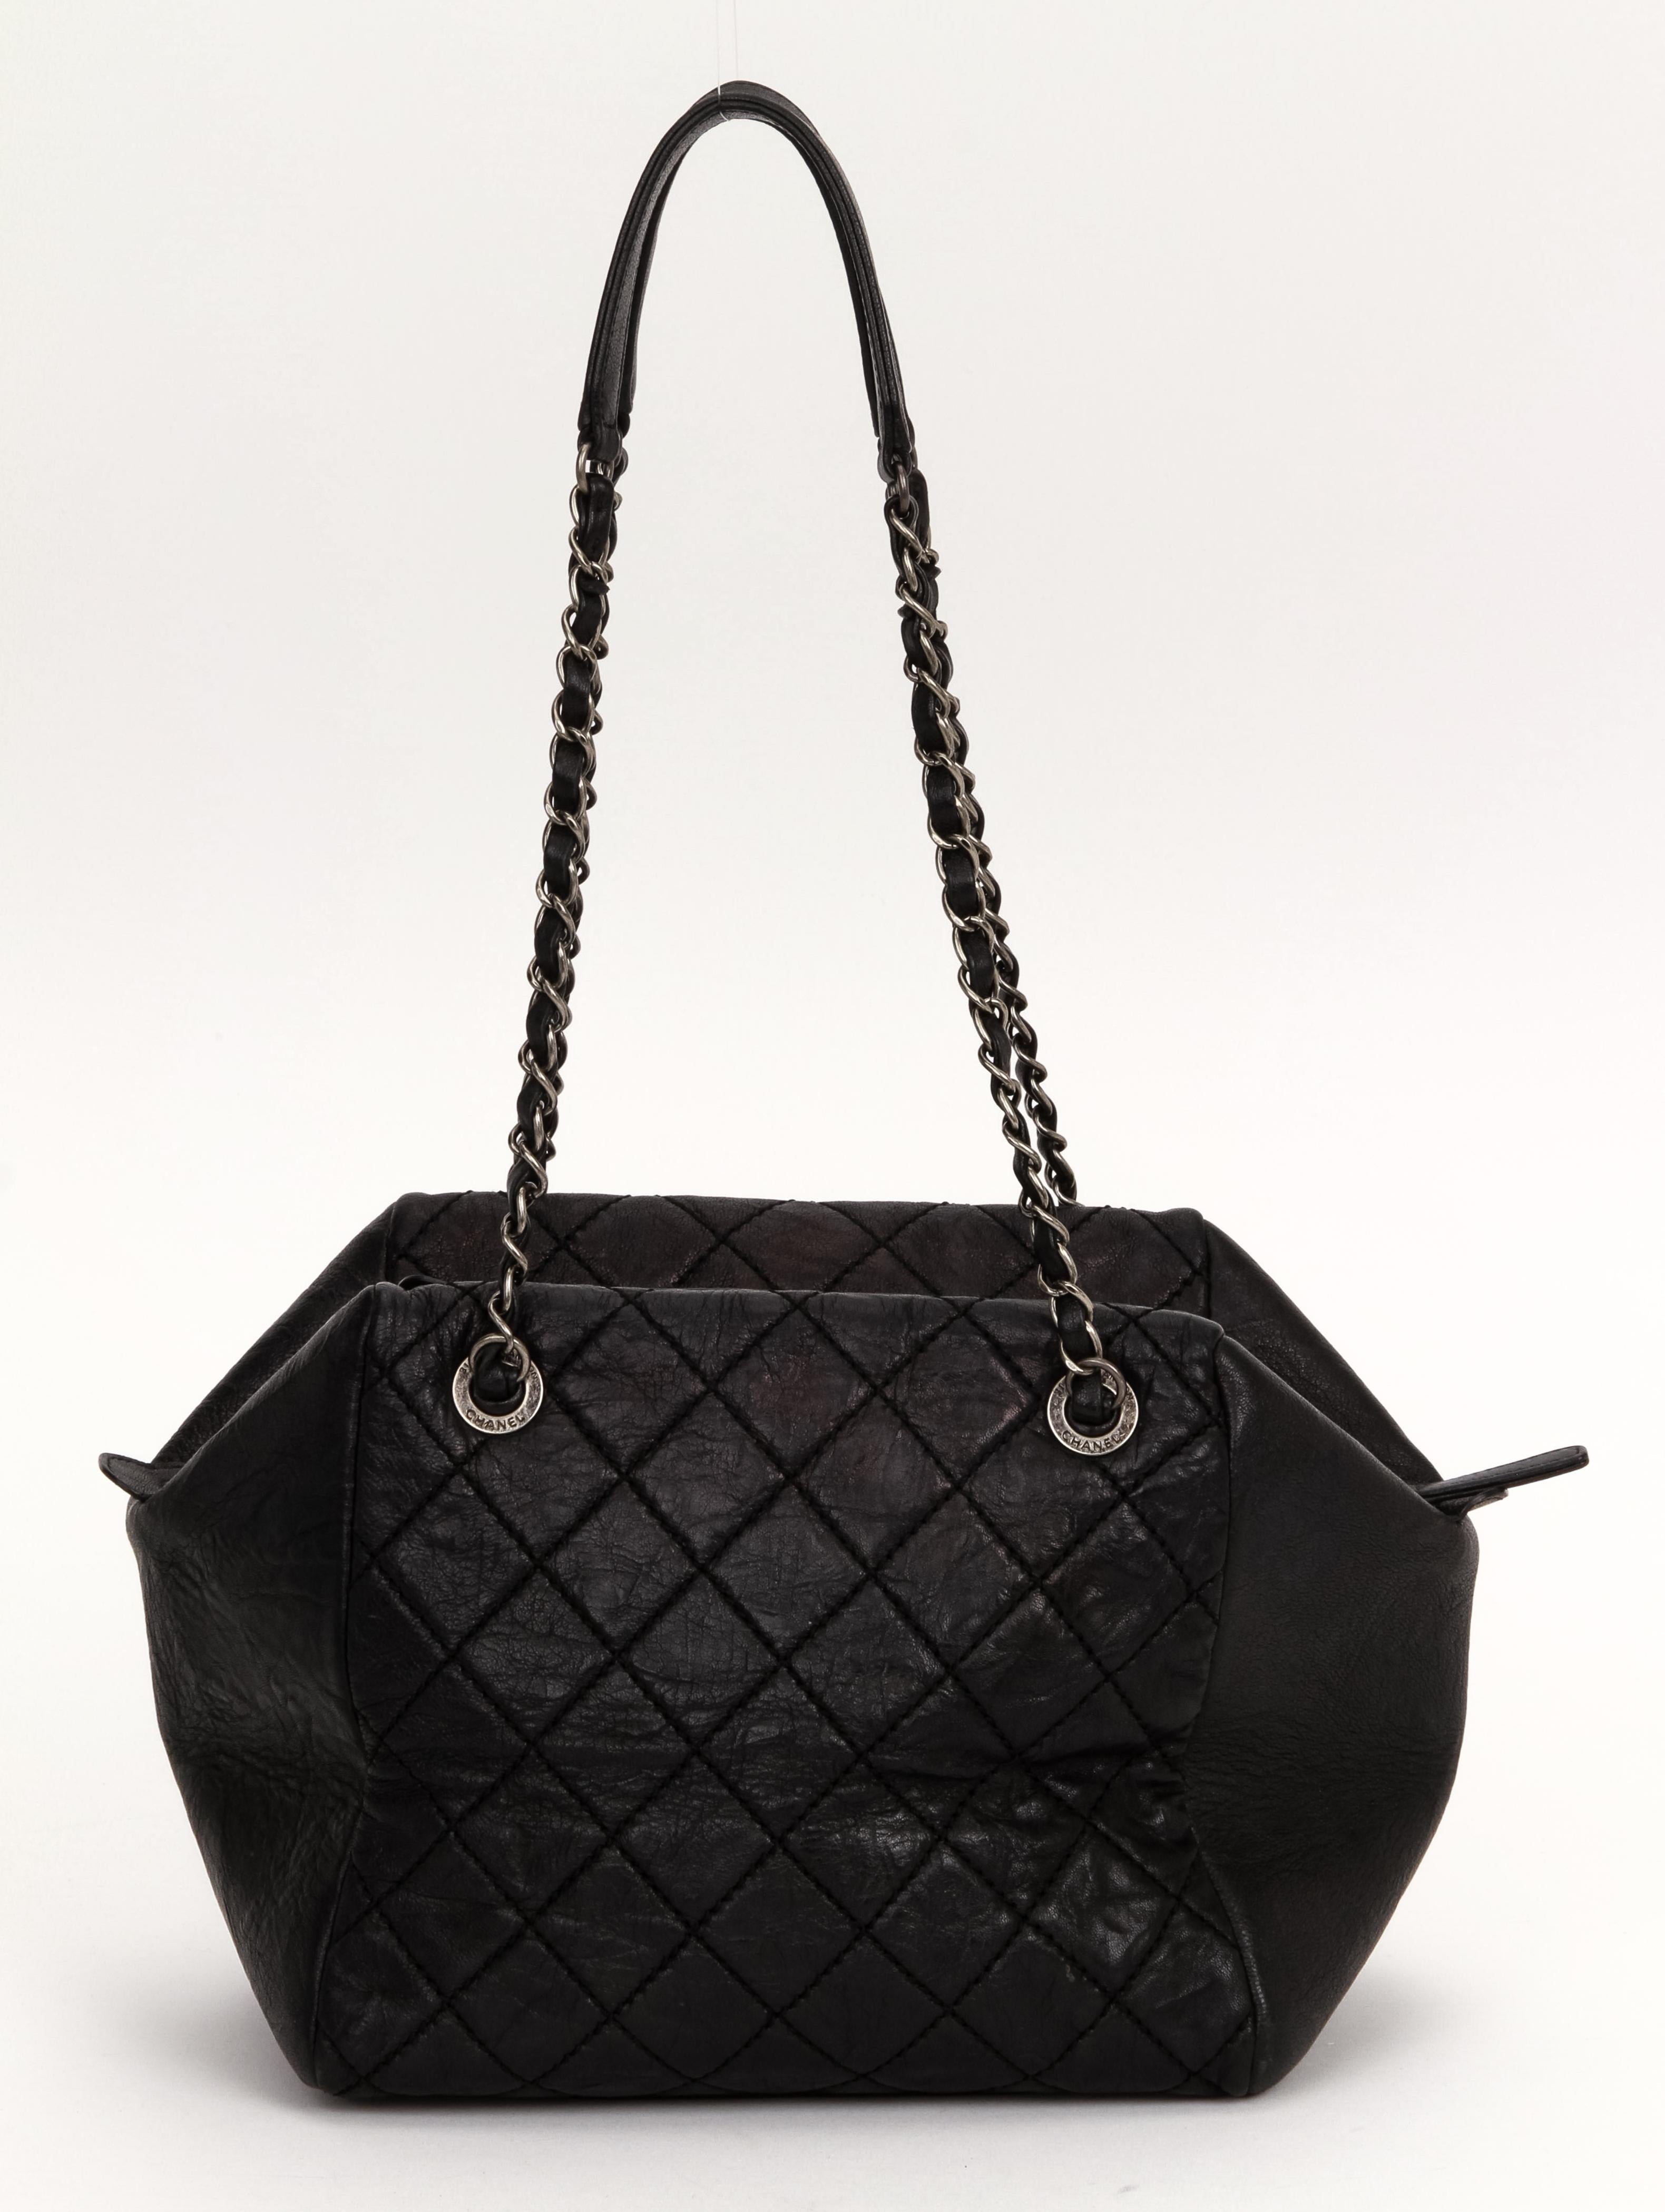 Women's Chanel Black Caviar Double Zip Handbag